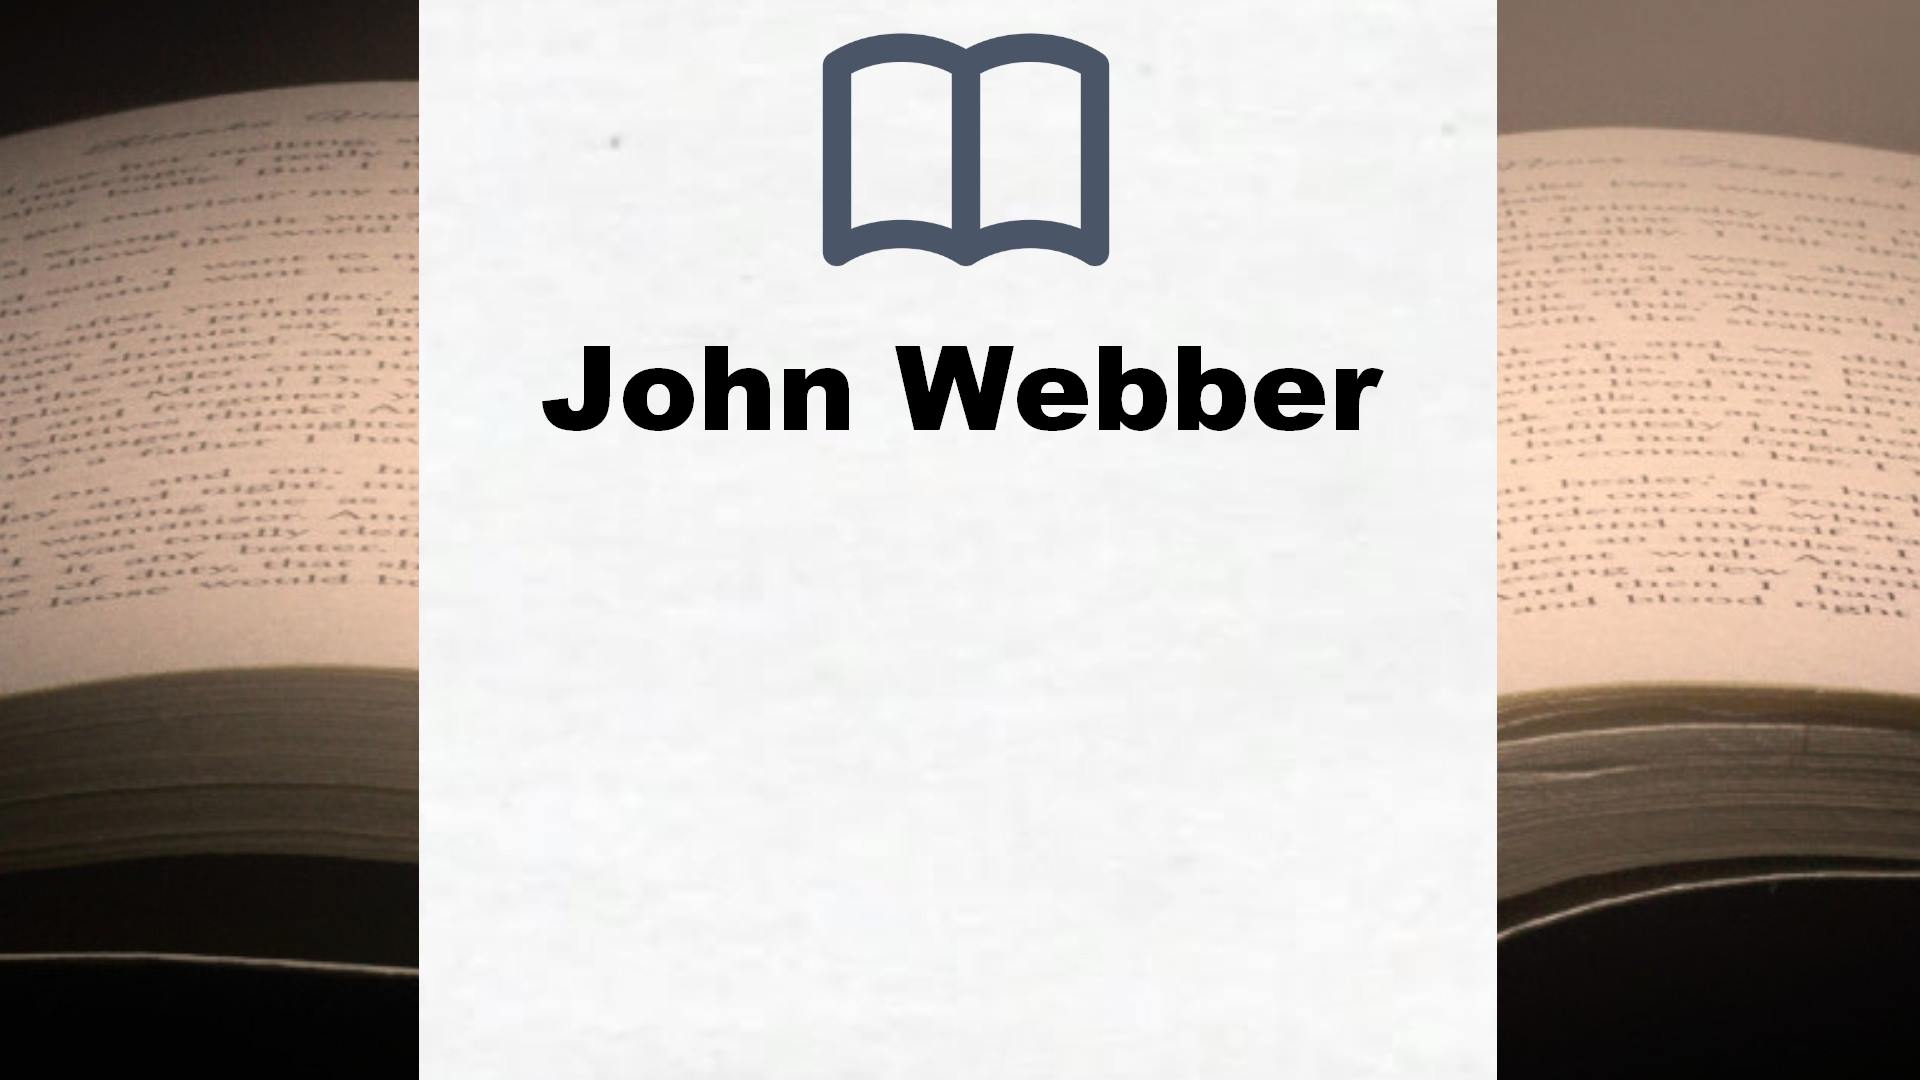 Bücher über John Webber